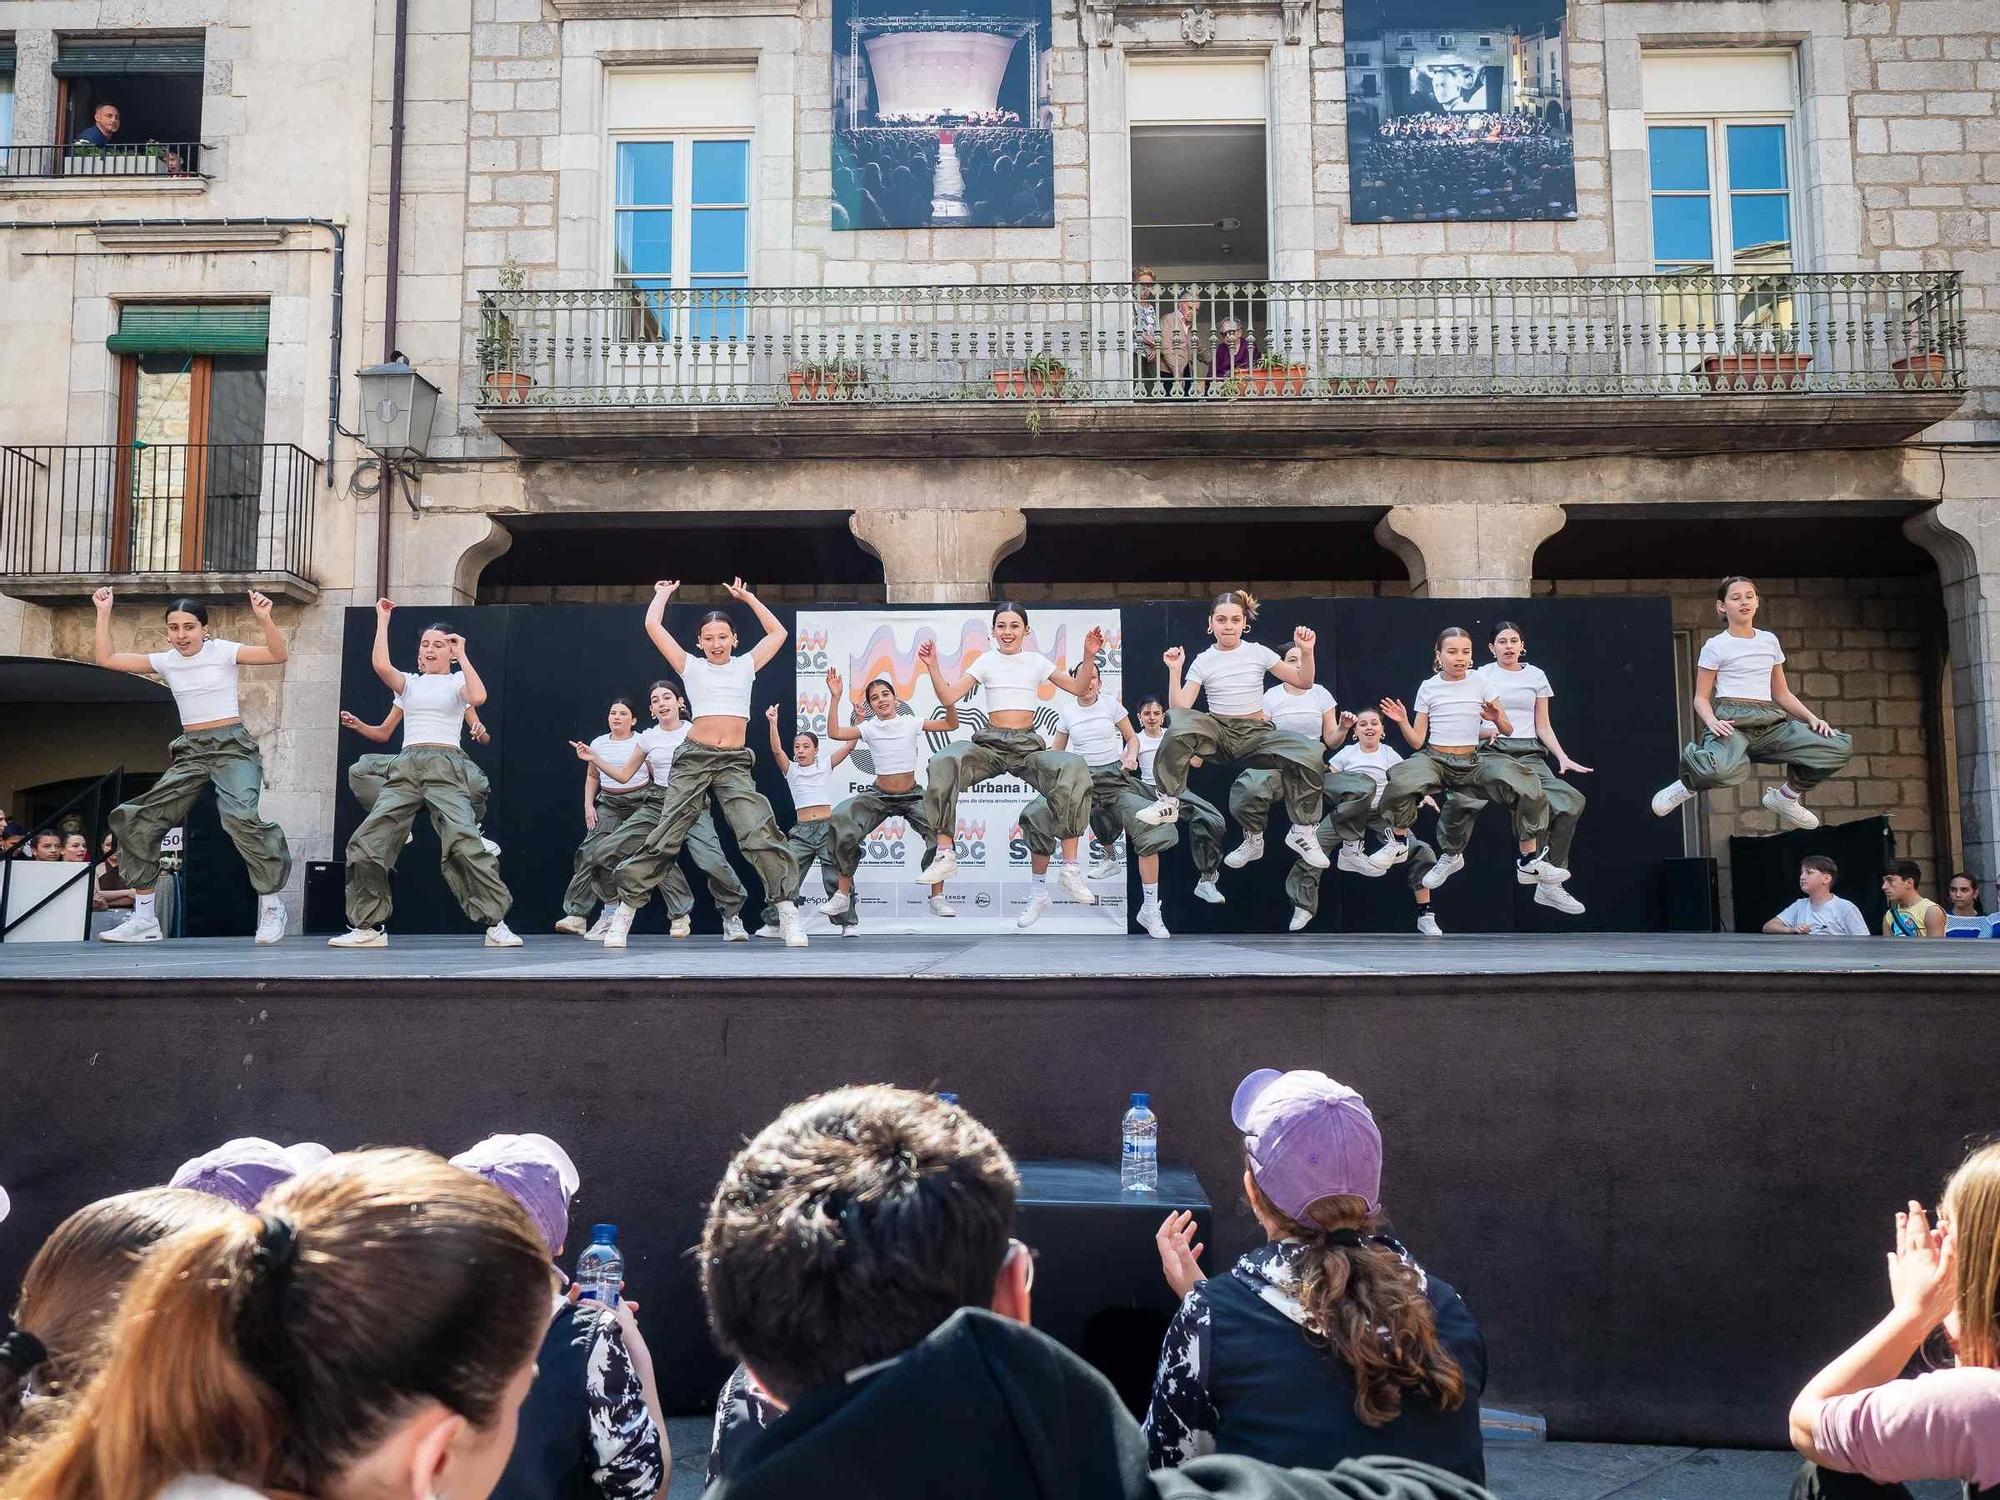 Les imatges del SÓC, el festival de dansa urbana i fusió de Torroella de Montgrí